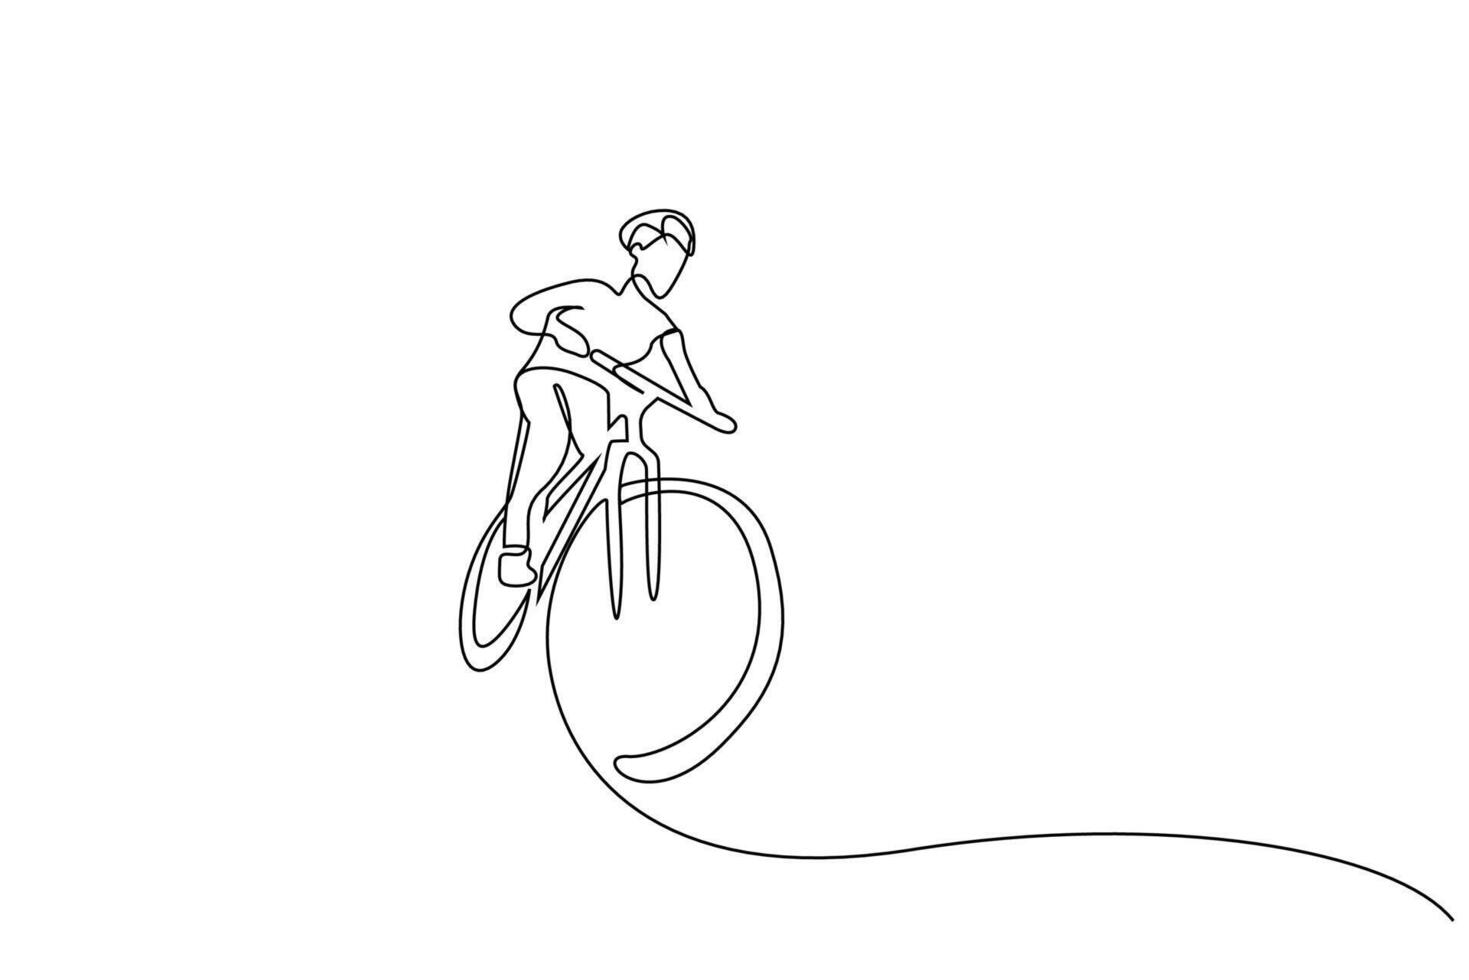 humano persona masculino bicicleta actividad deporte divertido carrera al aire libre uno línea Arte diseño vector